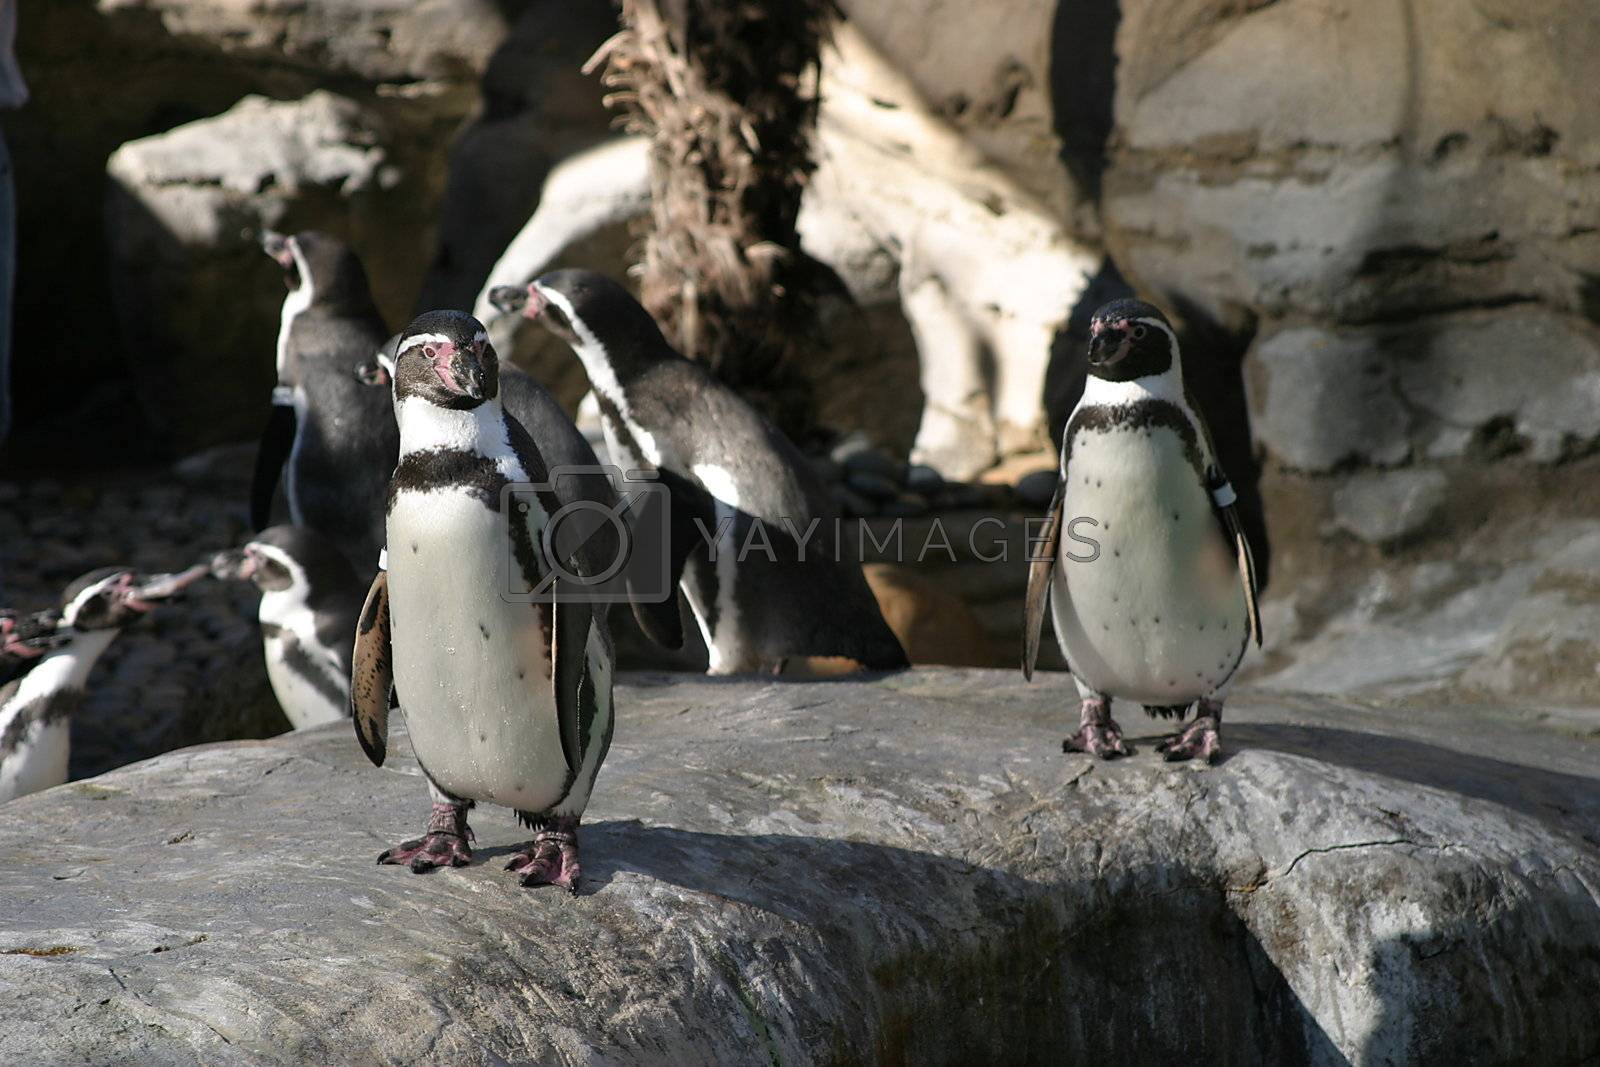 Royalty free image of Humboldt Penguin (4685) by hlehnerer